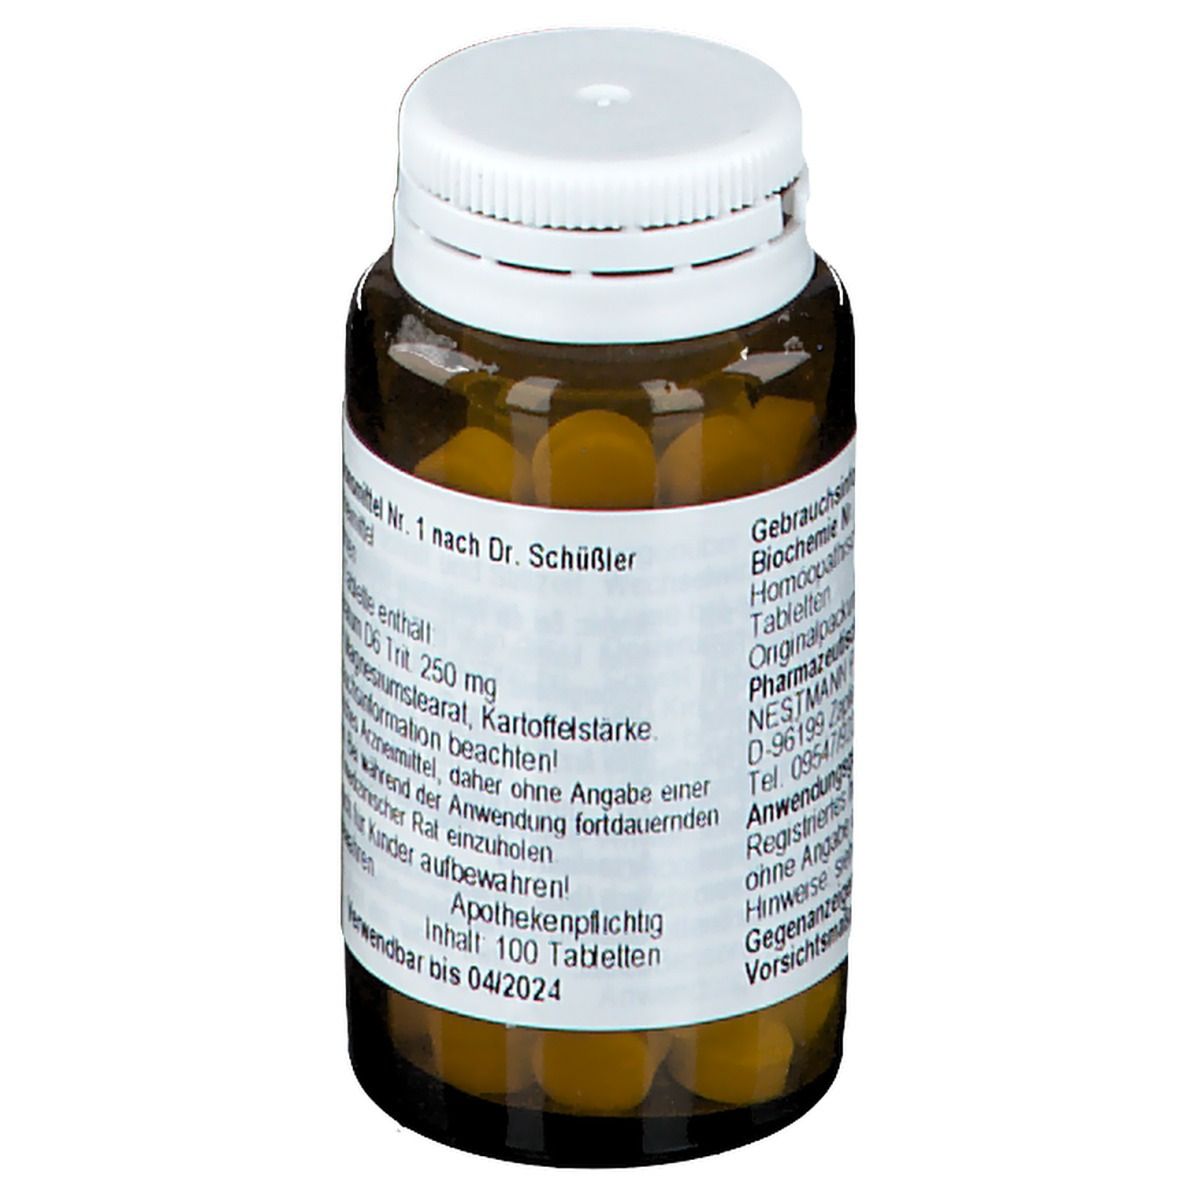 Biochemie 1 Calcium fluoratum D 6 Tabletten